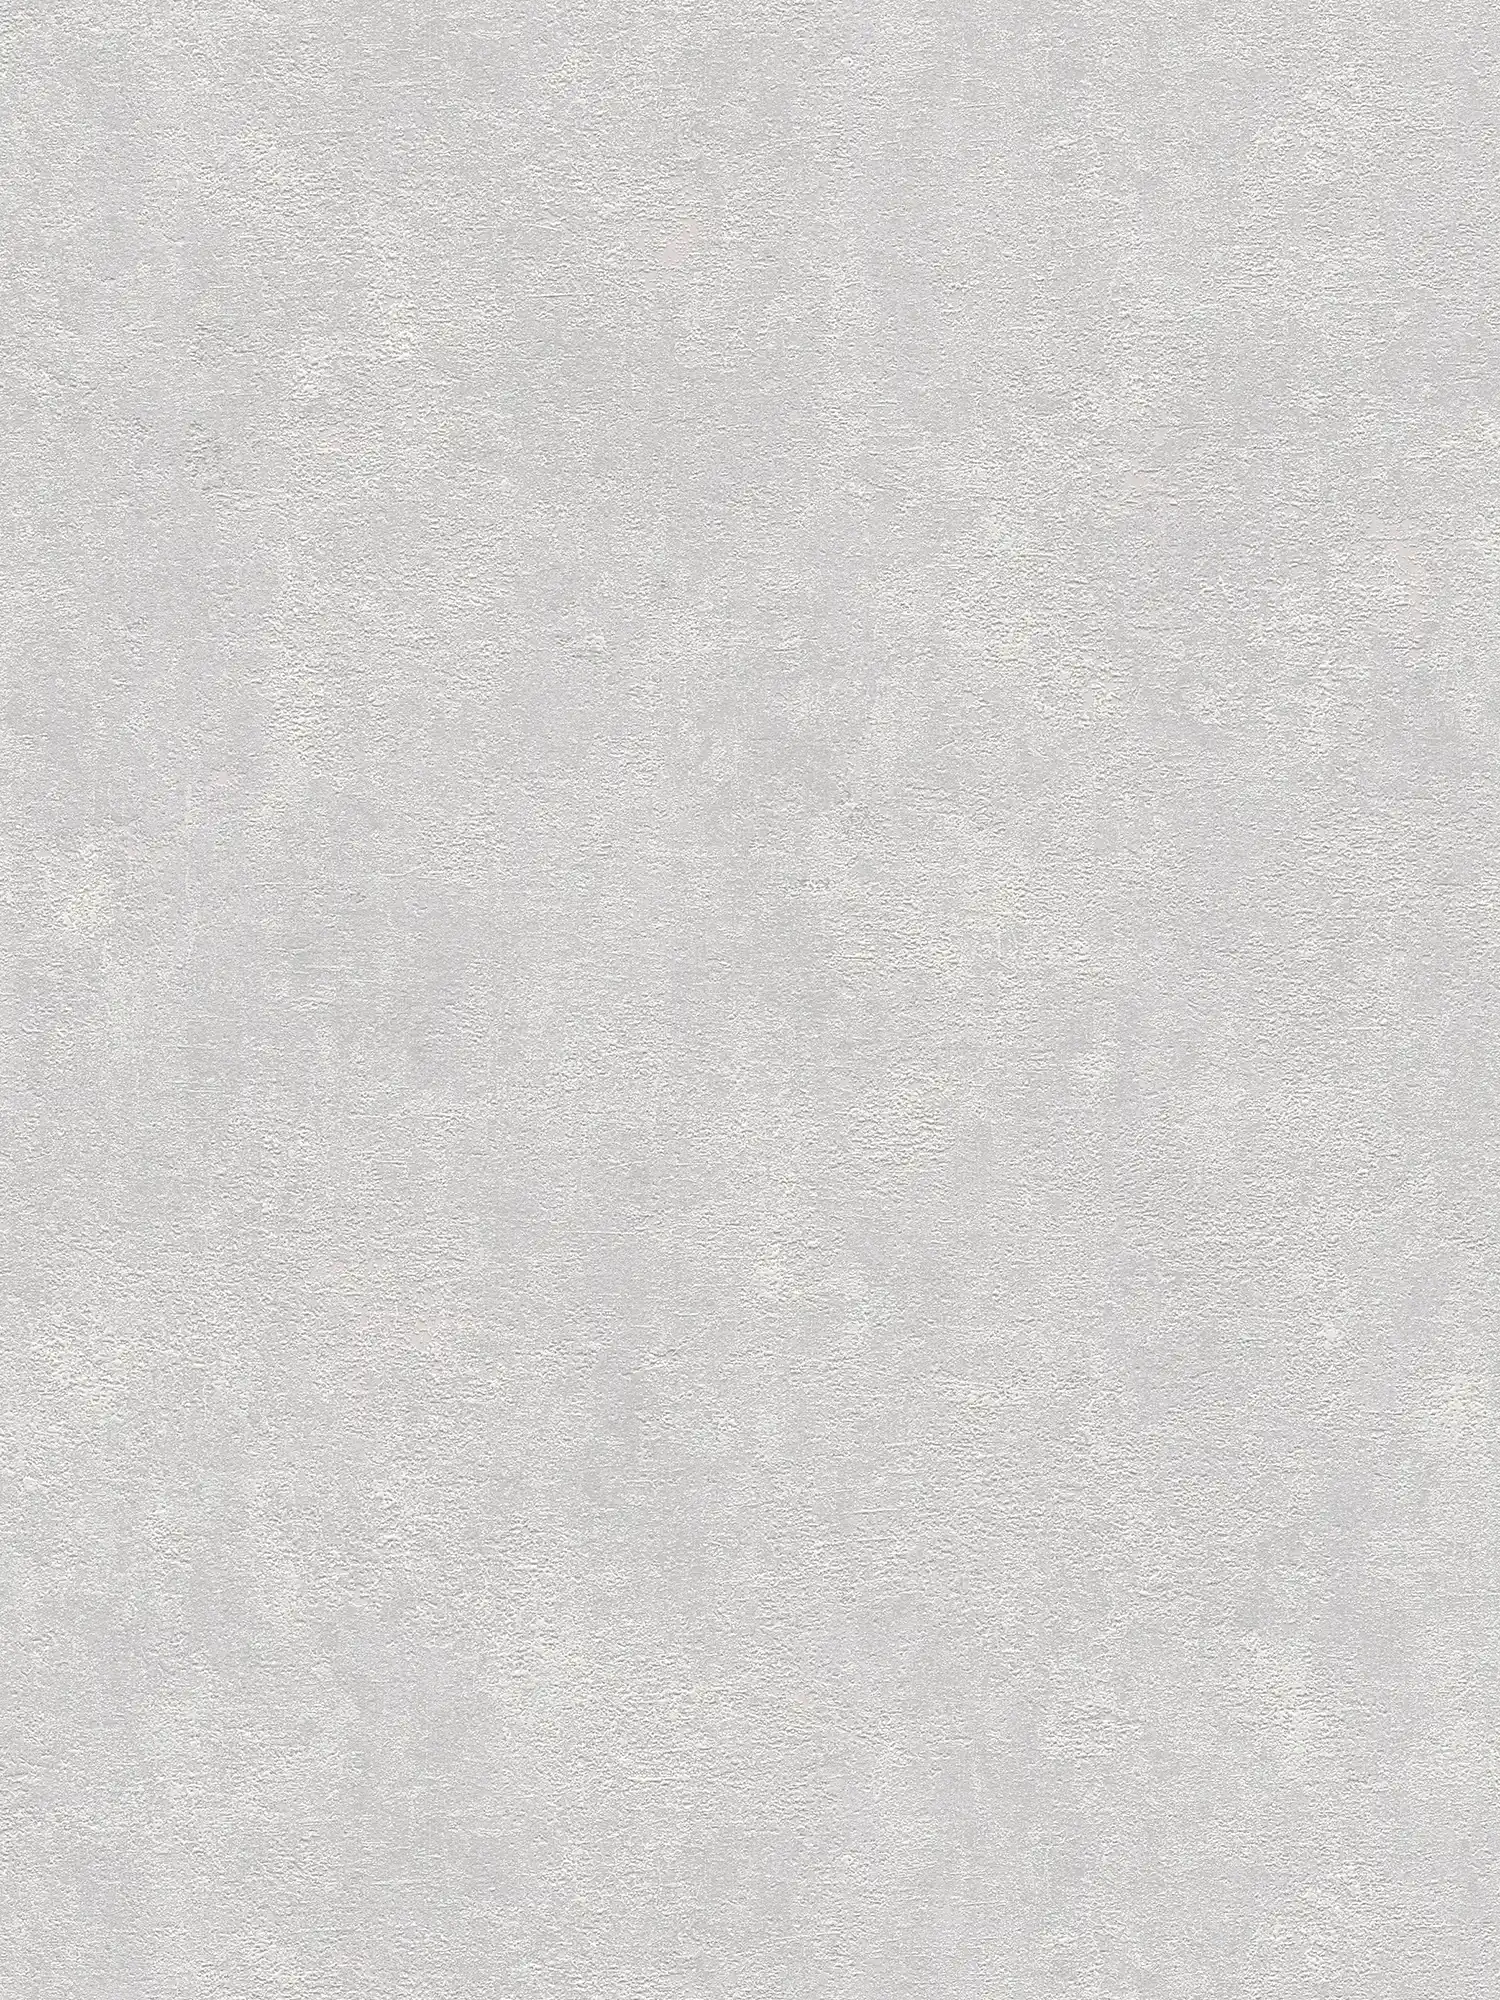 Papier peint plâtre structuré, uni & satiné - gris clair
